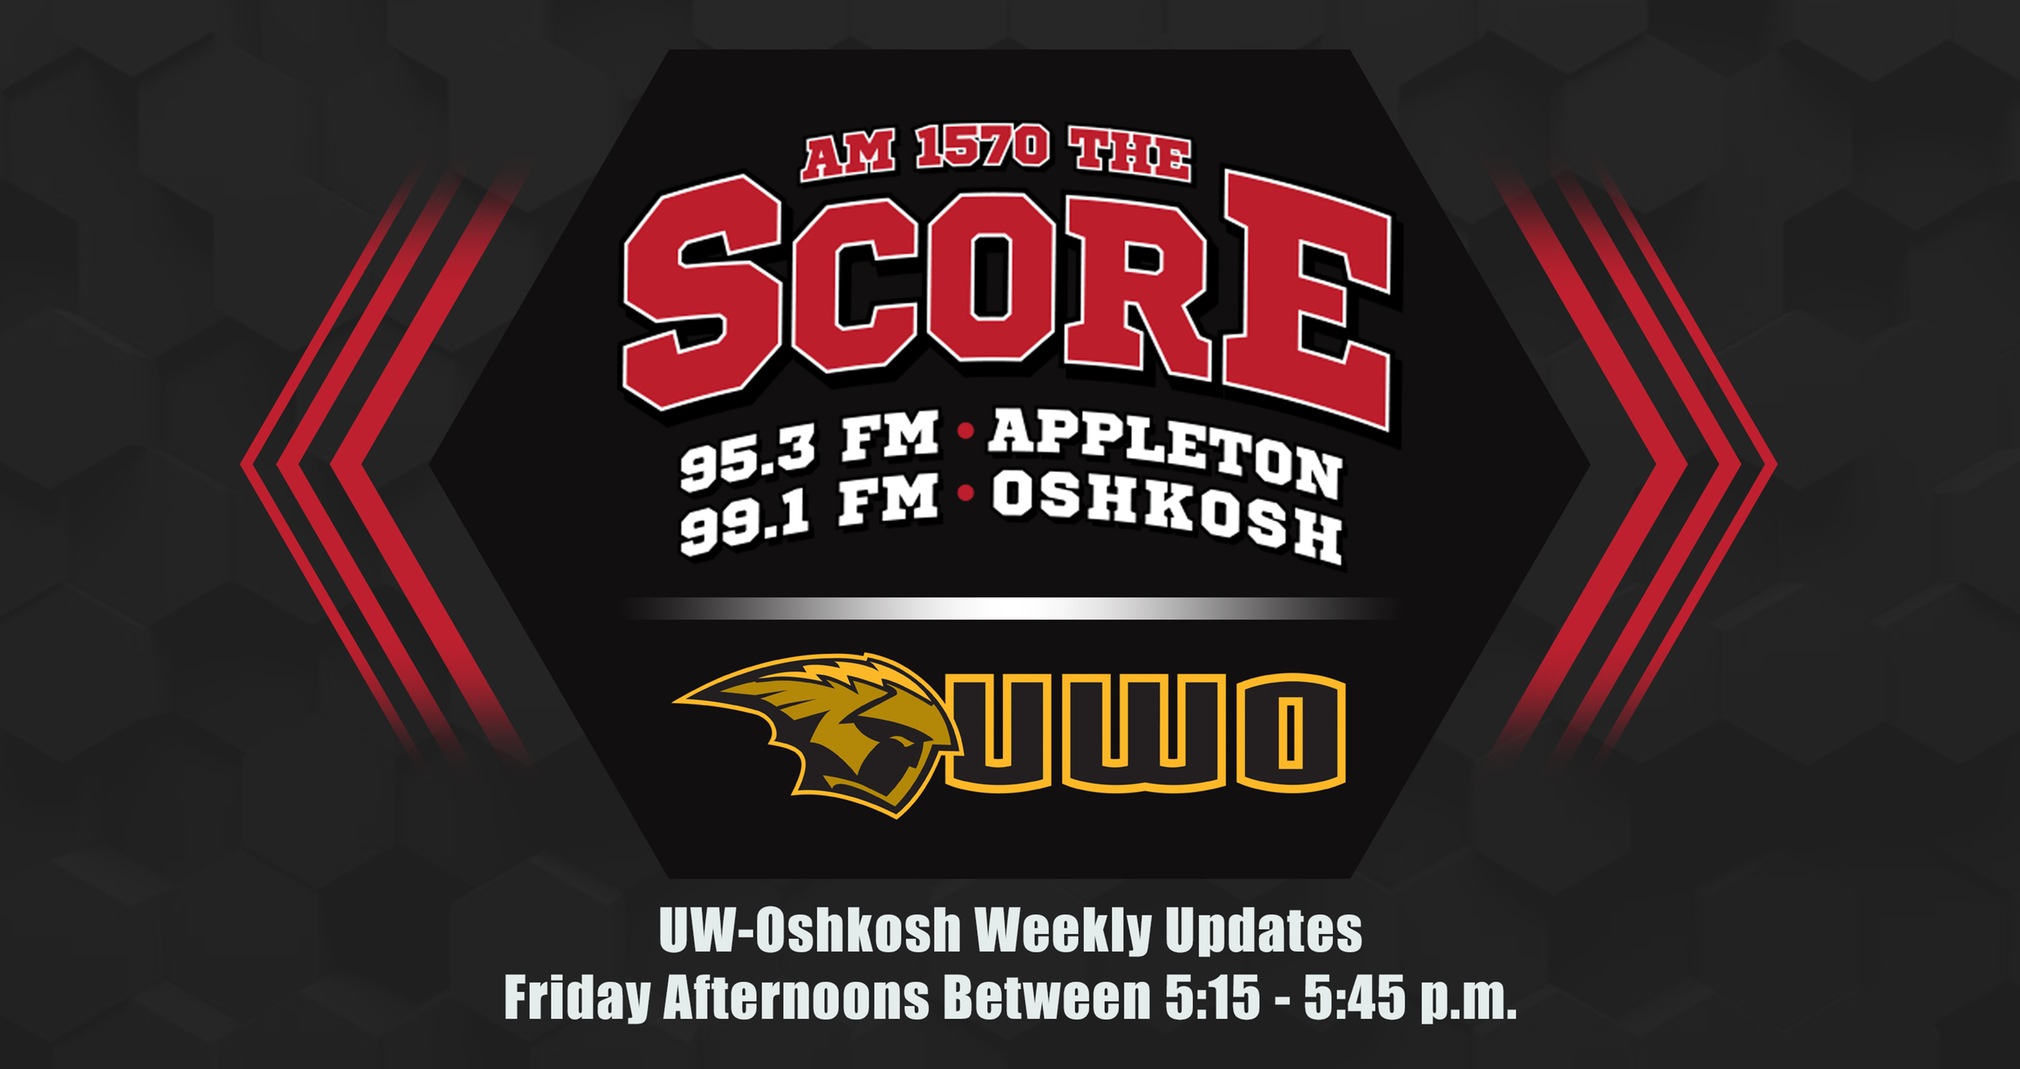 The Score To Provide Weekly UW-Oshkosh Athletics Updates